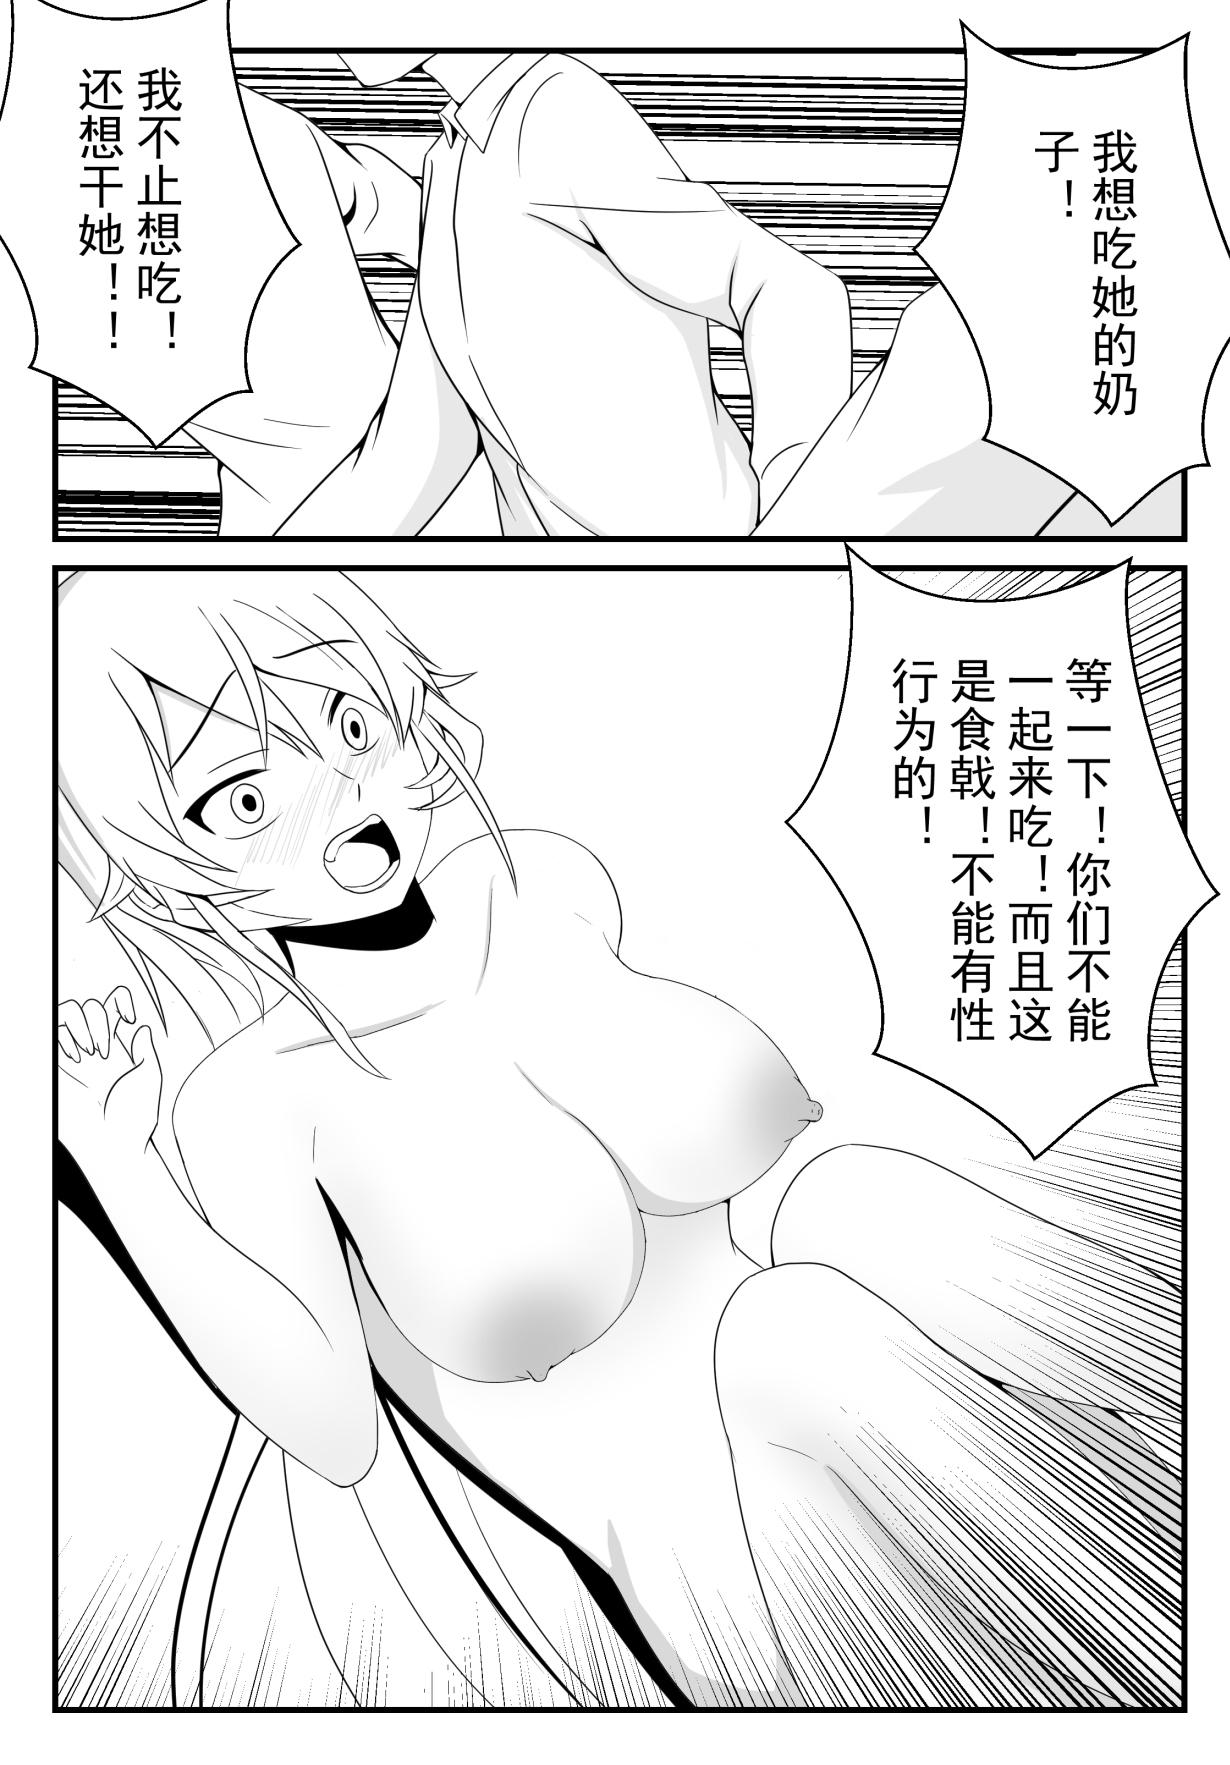 Full Movie 食戟之灵 - Shokugeki no soma Free Hardcore Porn - Page 35